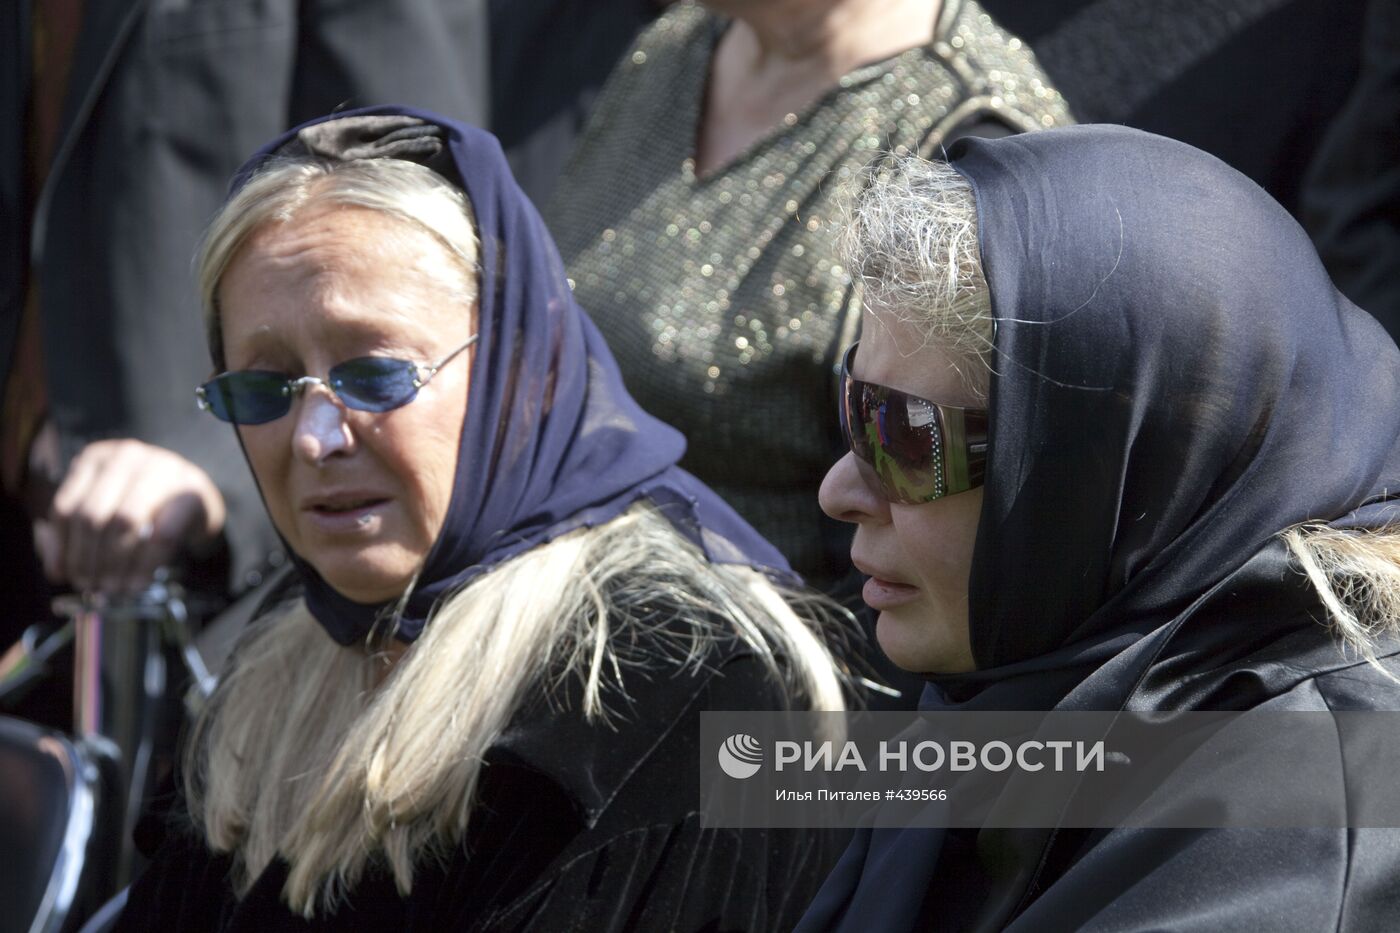 Похороны С. В. Михалкова на Новодевичьем кладбище в Москве